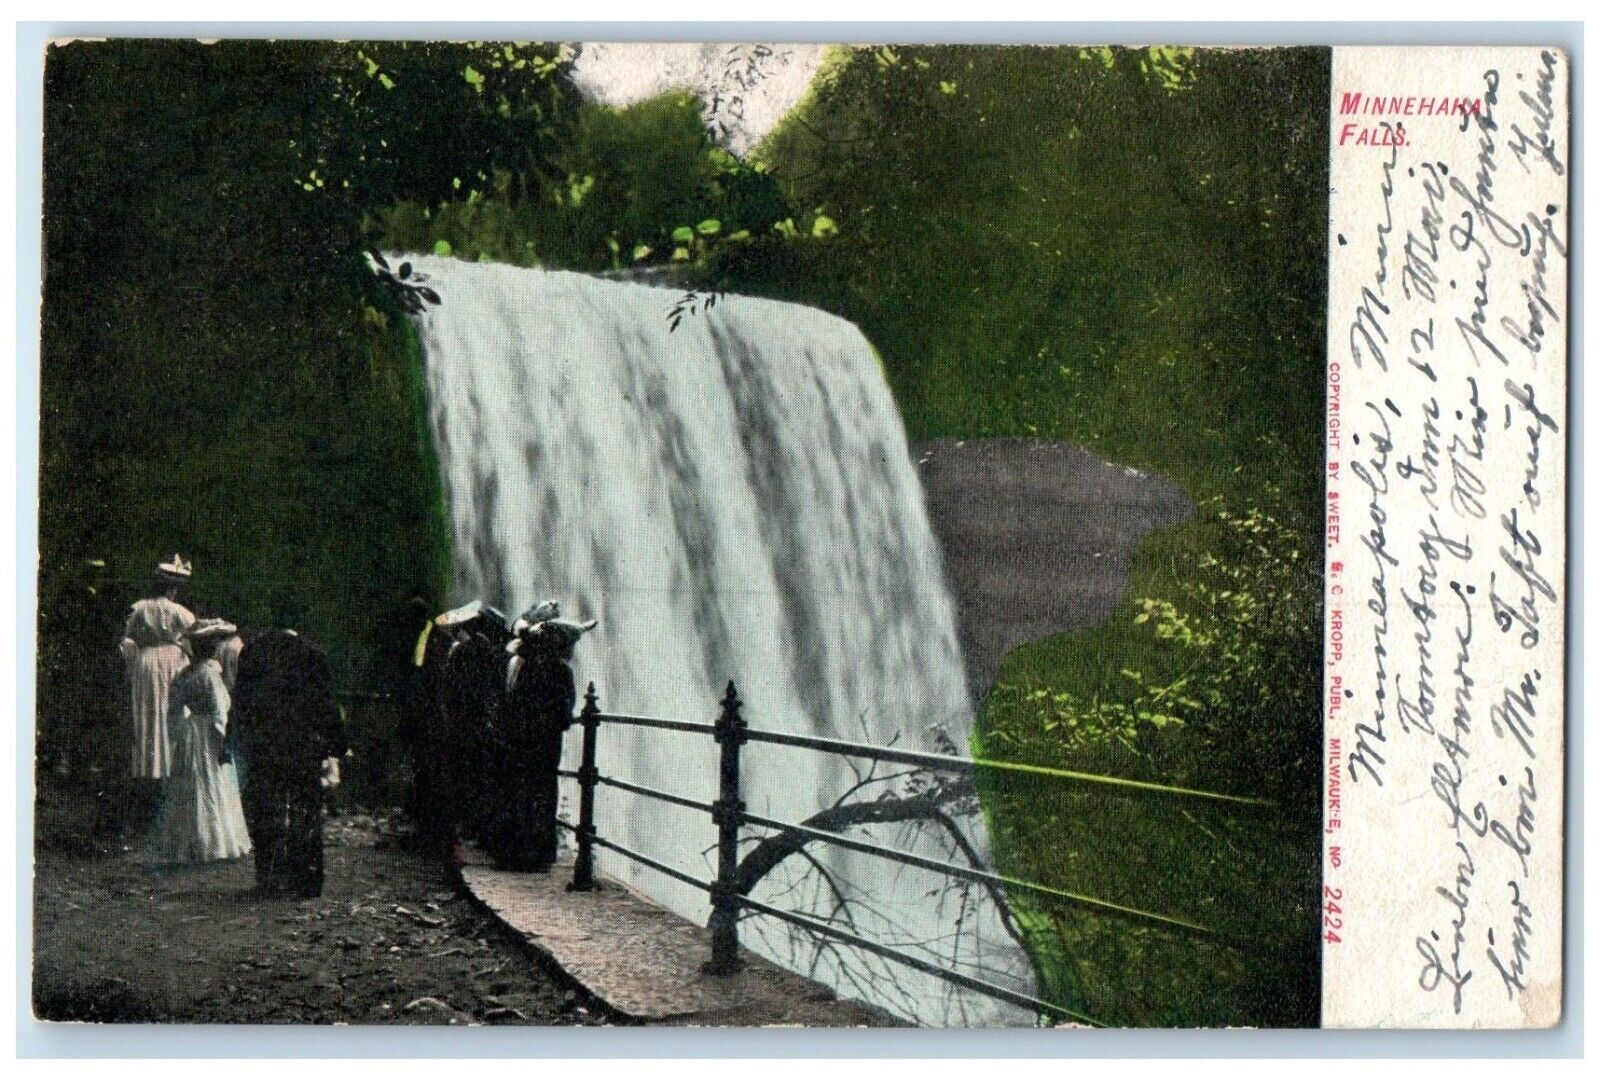 1907 View Of Minnehaha Falls Waterfalls Minneapolis Minnesota MN Posted Postcard